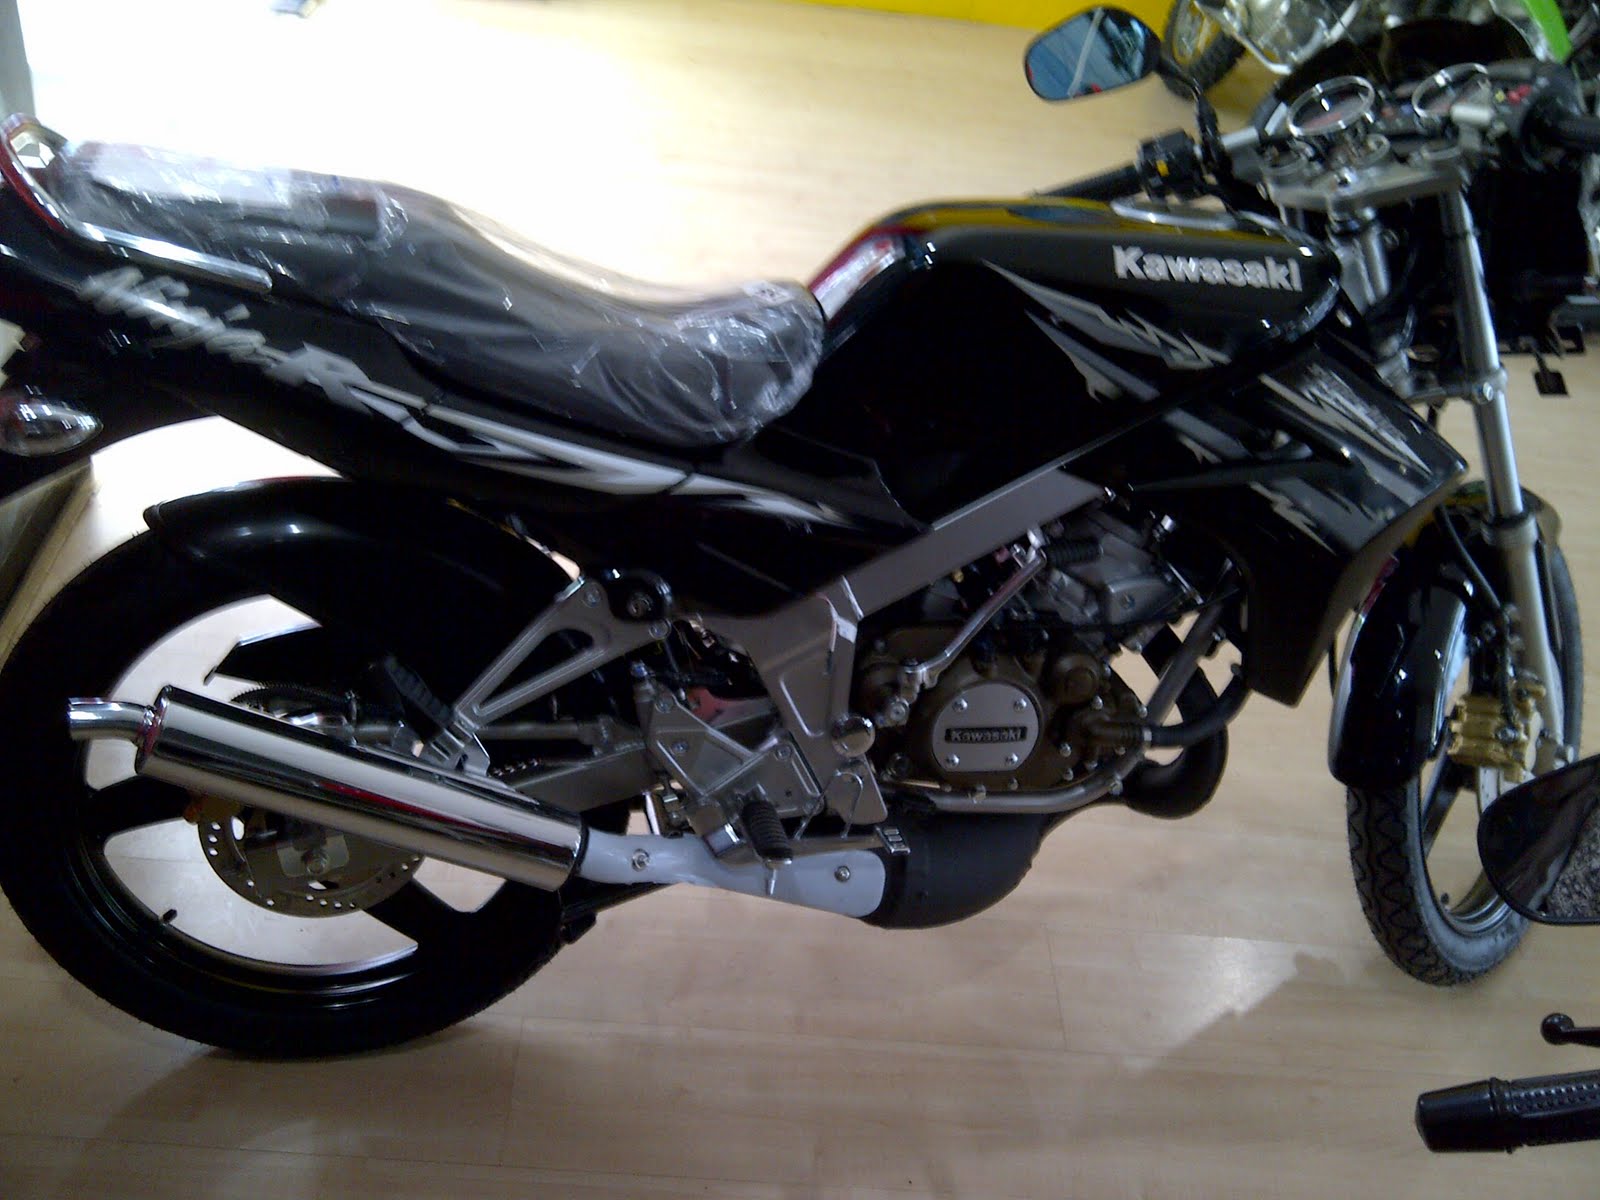 99 Gambar Motor Kawasaki Ninja Rr Yg Baru Terbaru Dan Terlengkap